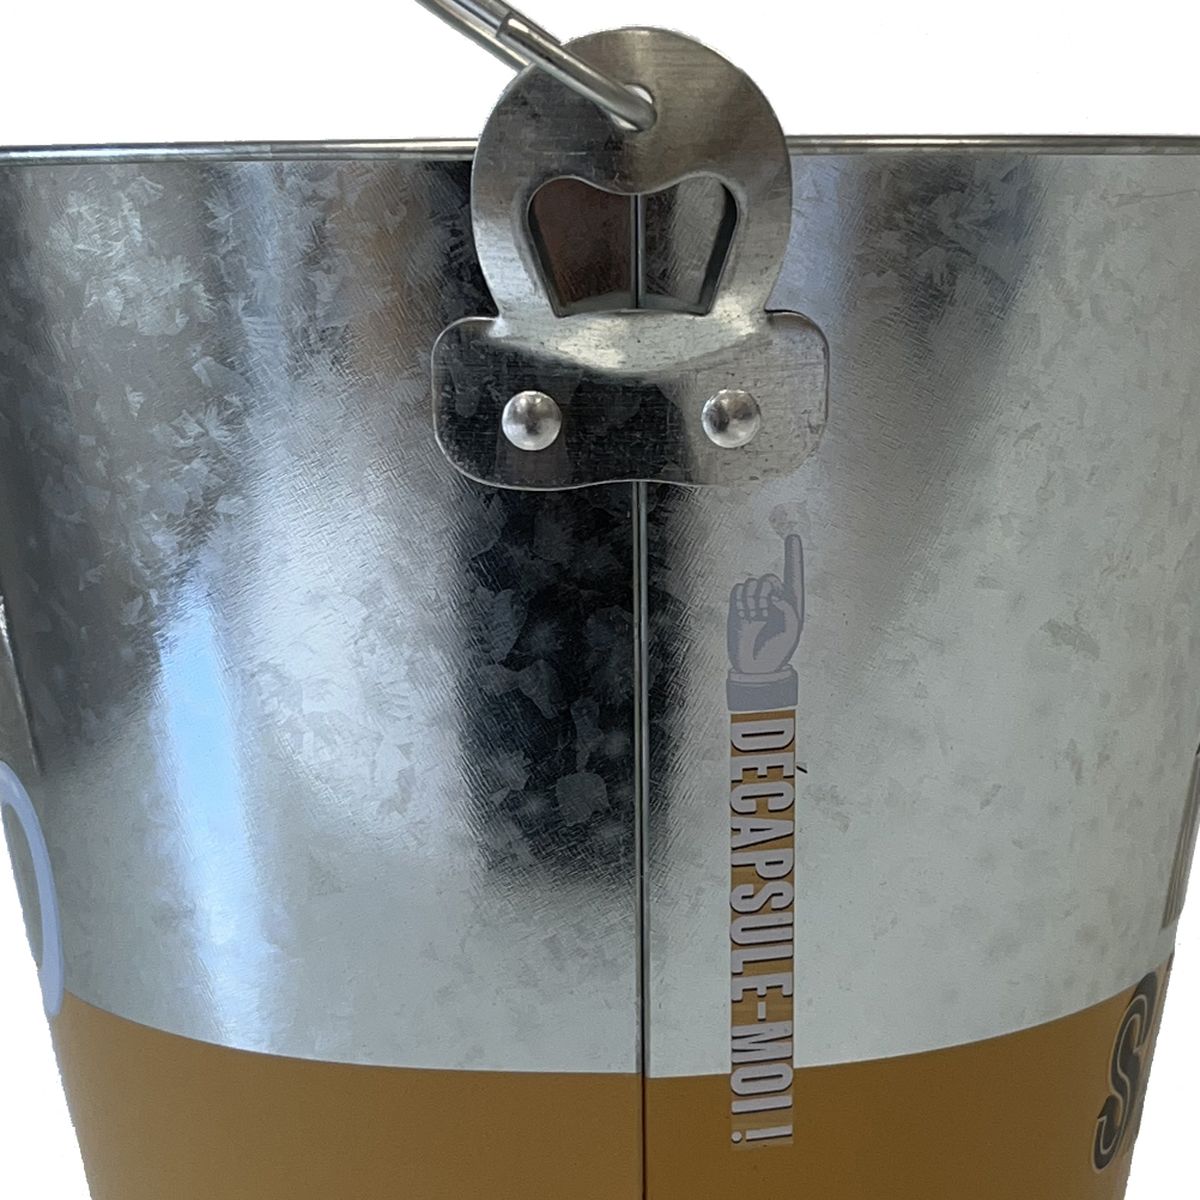 Metal beer bucket in zinc look with integrated bottle opener